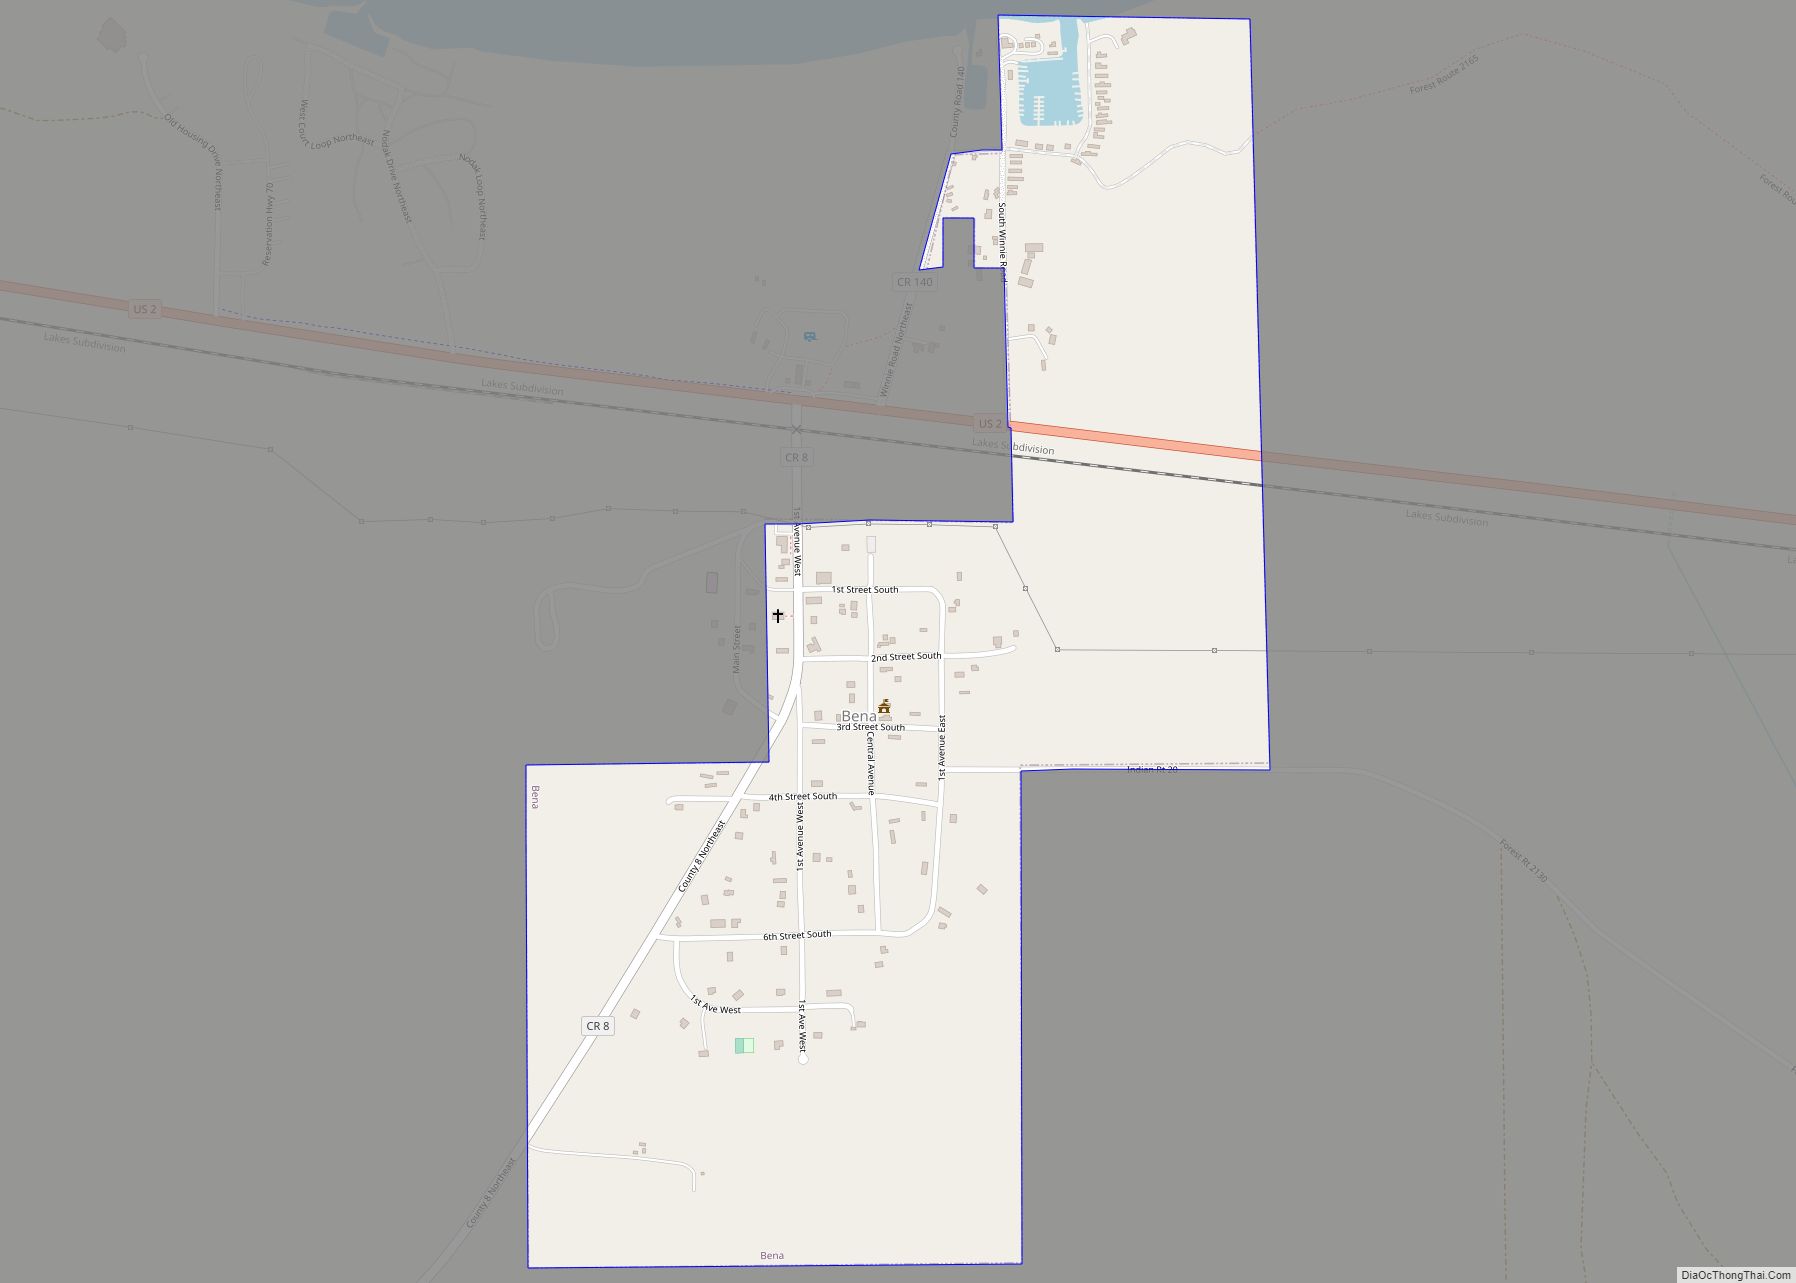 Map of Bena city